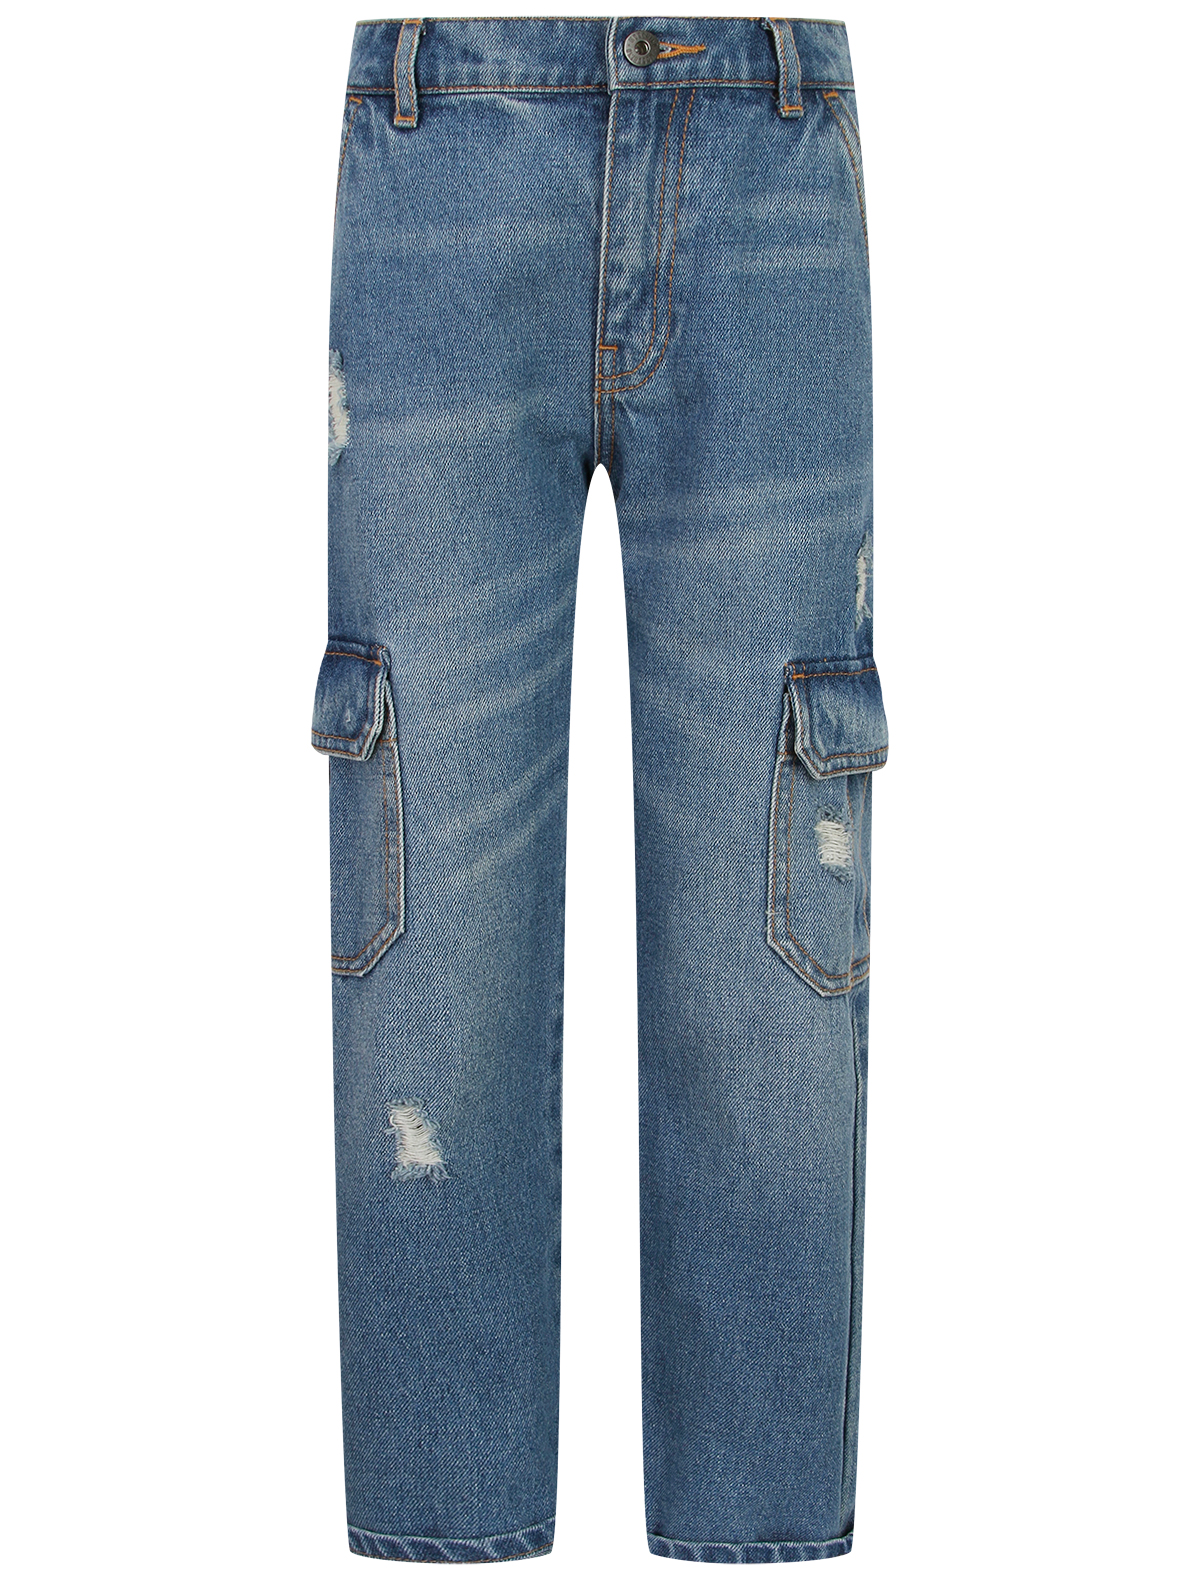 джинсы moschino для мальчика, синие